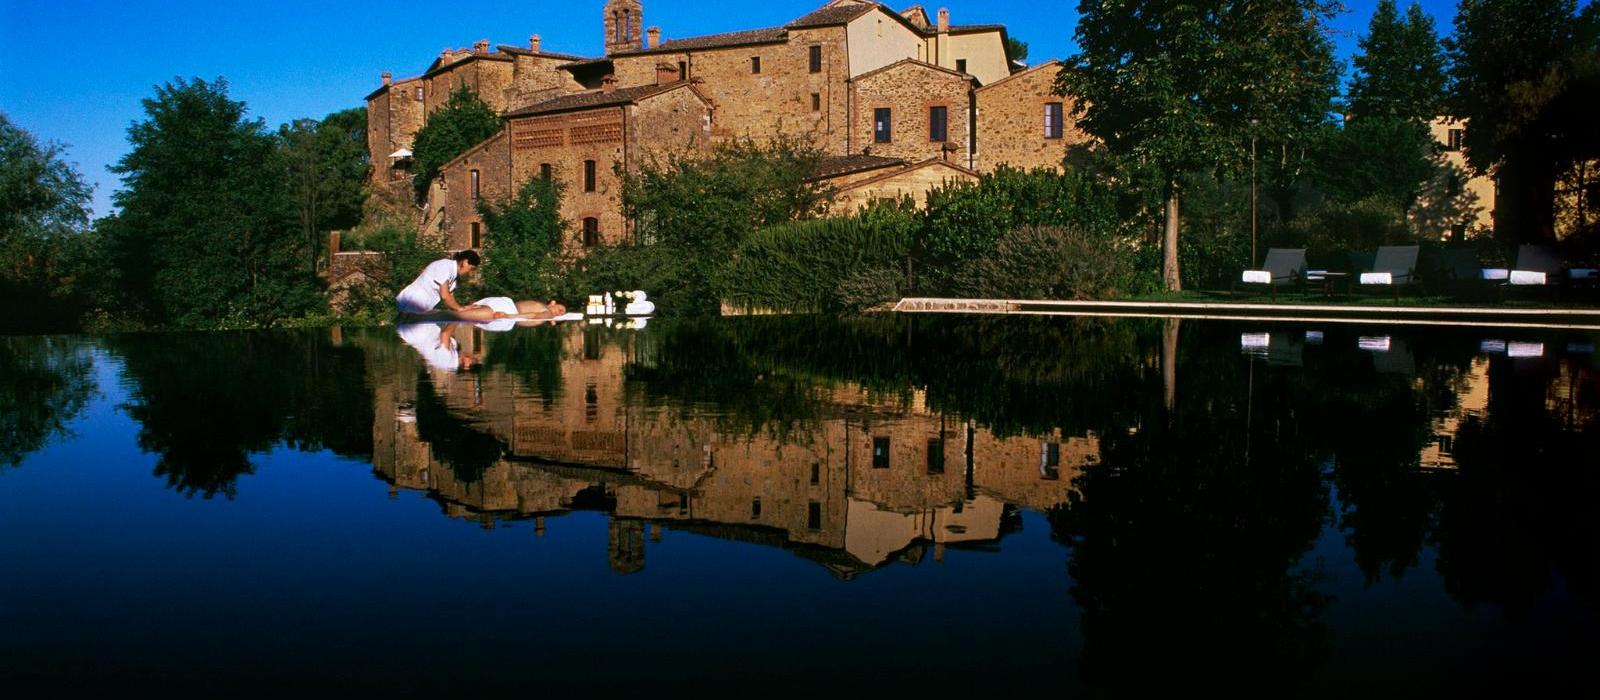 蒙娜斯特古堡酒店(Castel Monastero) 图片  www.lhw.cn